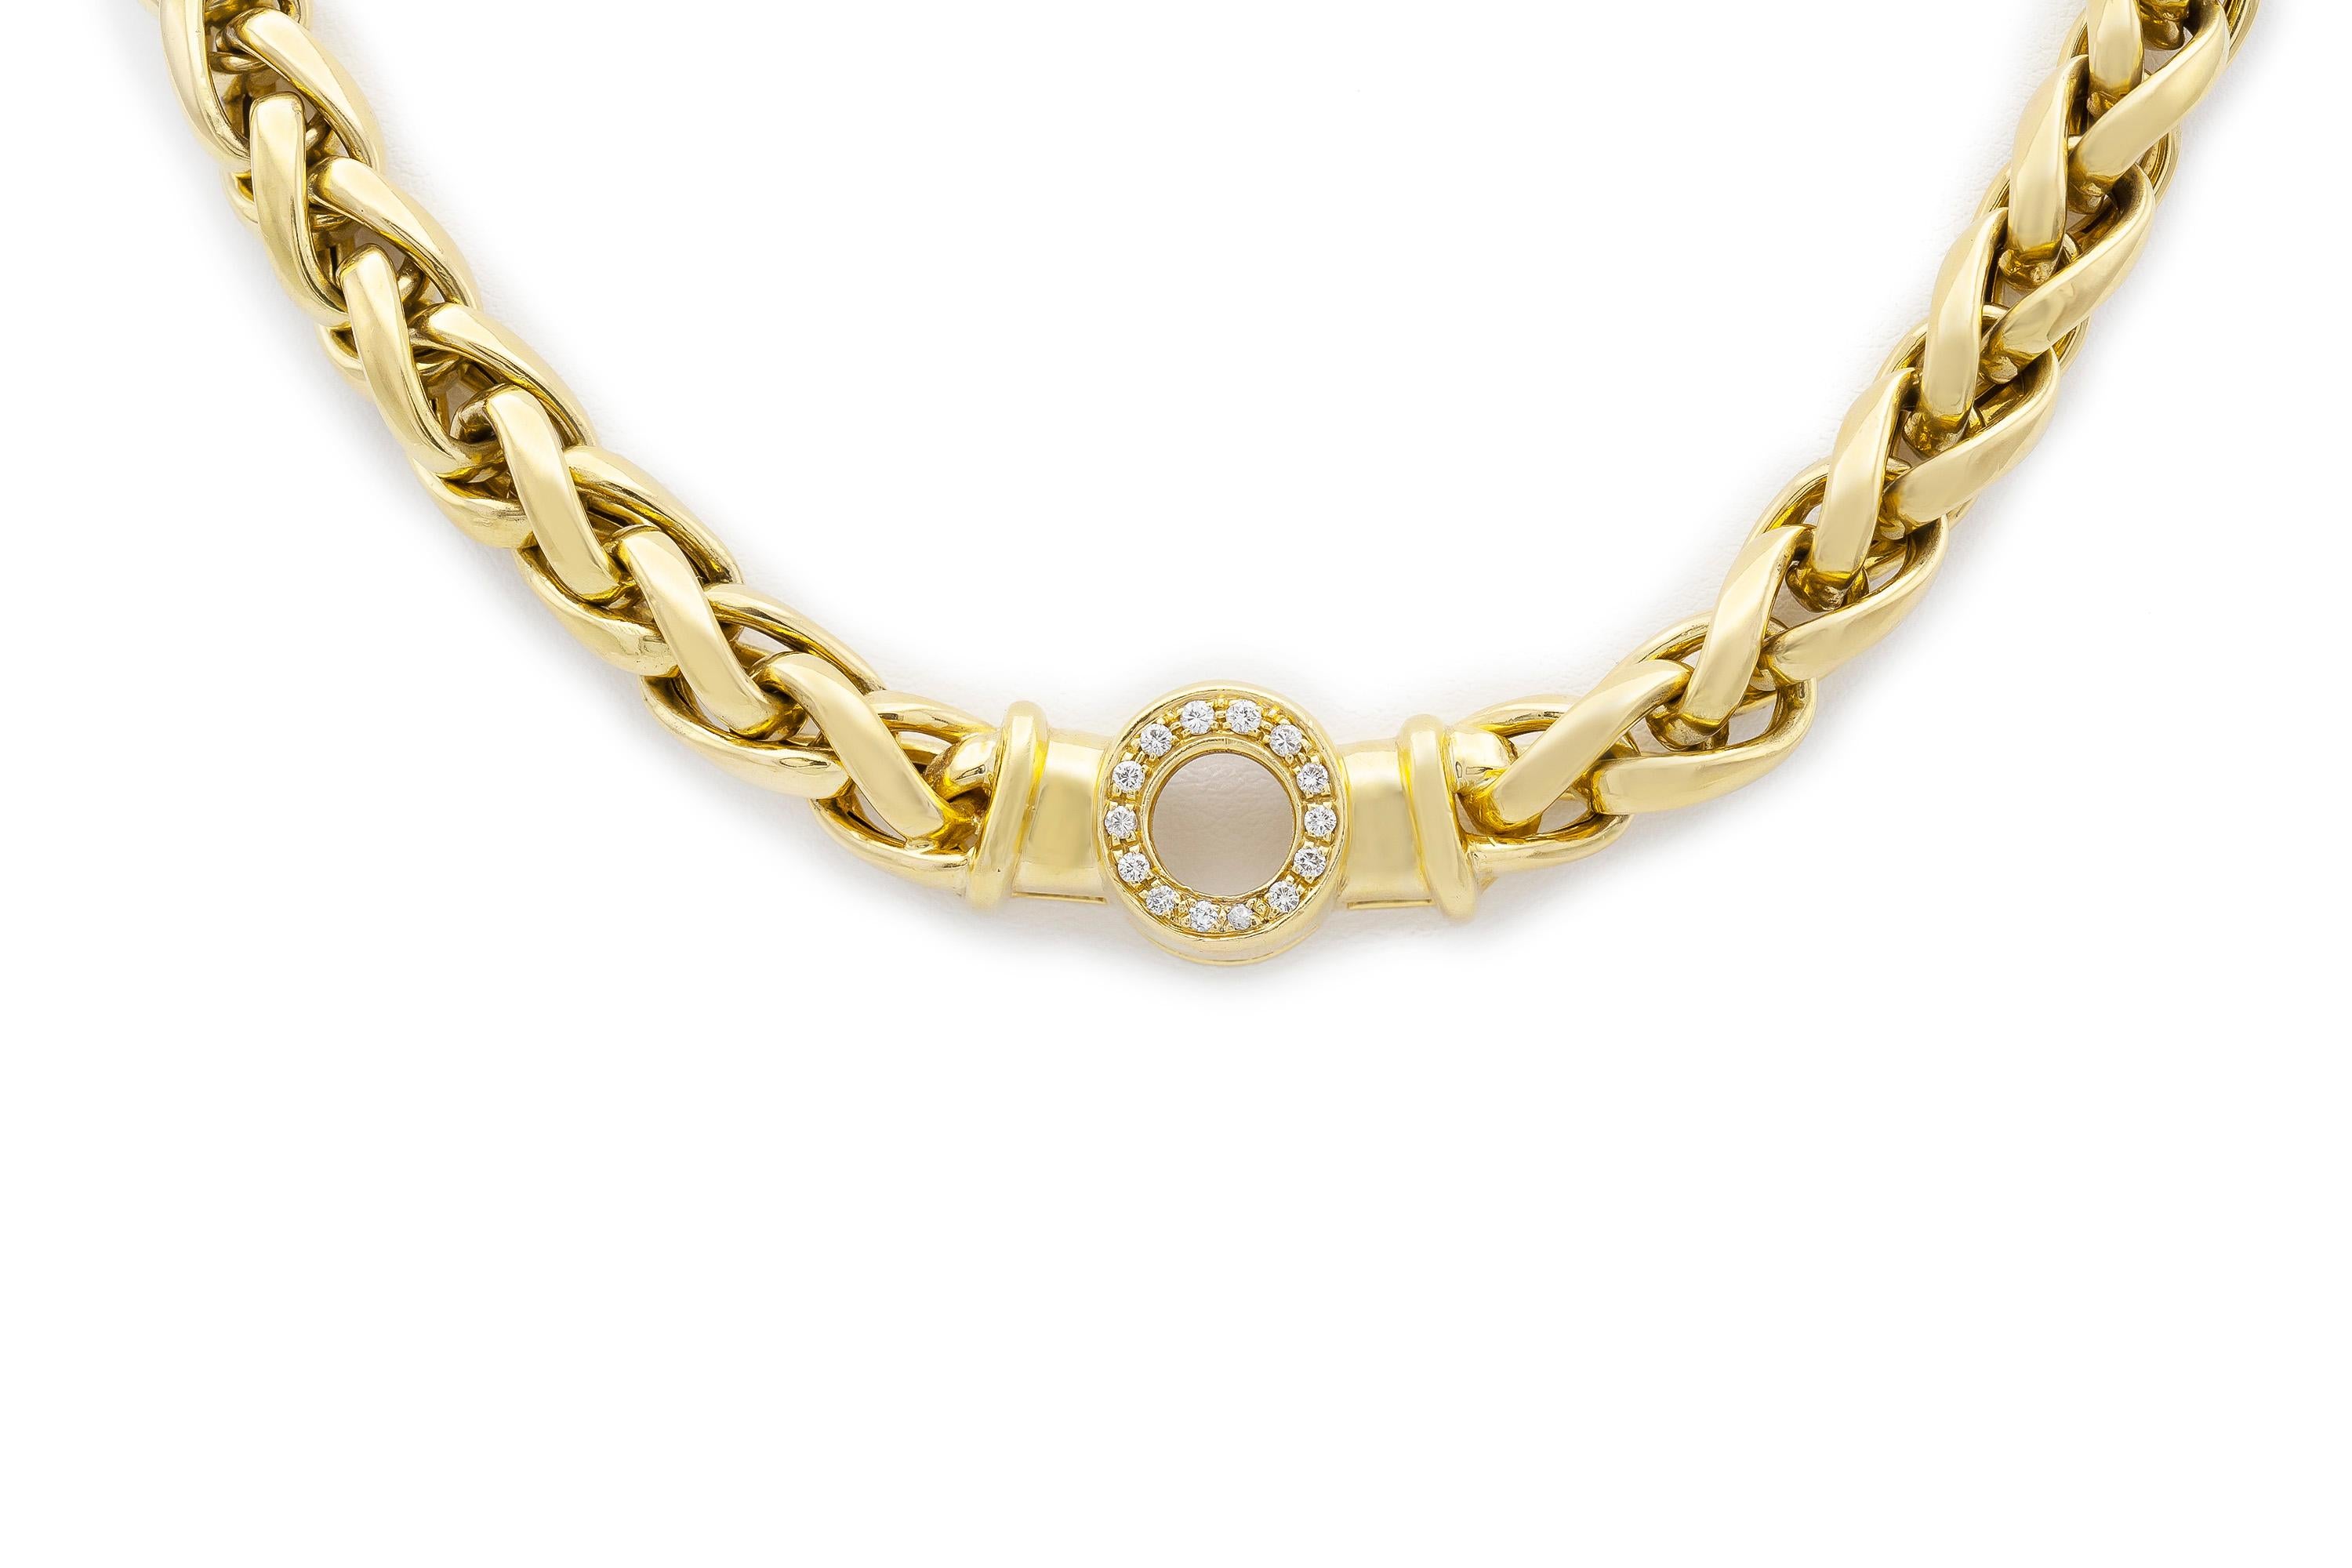 Fein gearbeitete Halskette aus 18 Karat Gelbgold, mit Diamanten von 0,56 Karat.
17 3/4 Zoll lang, Gewicht 58,9 dwt. 